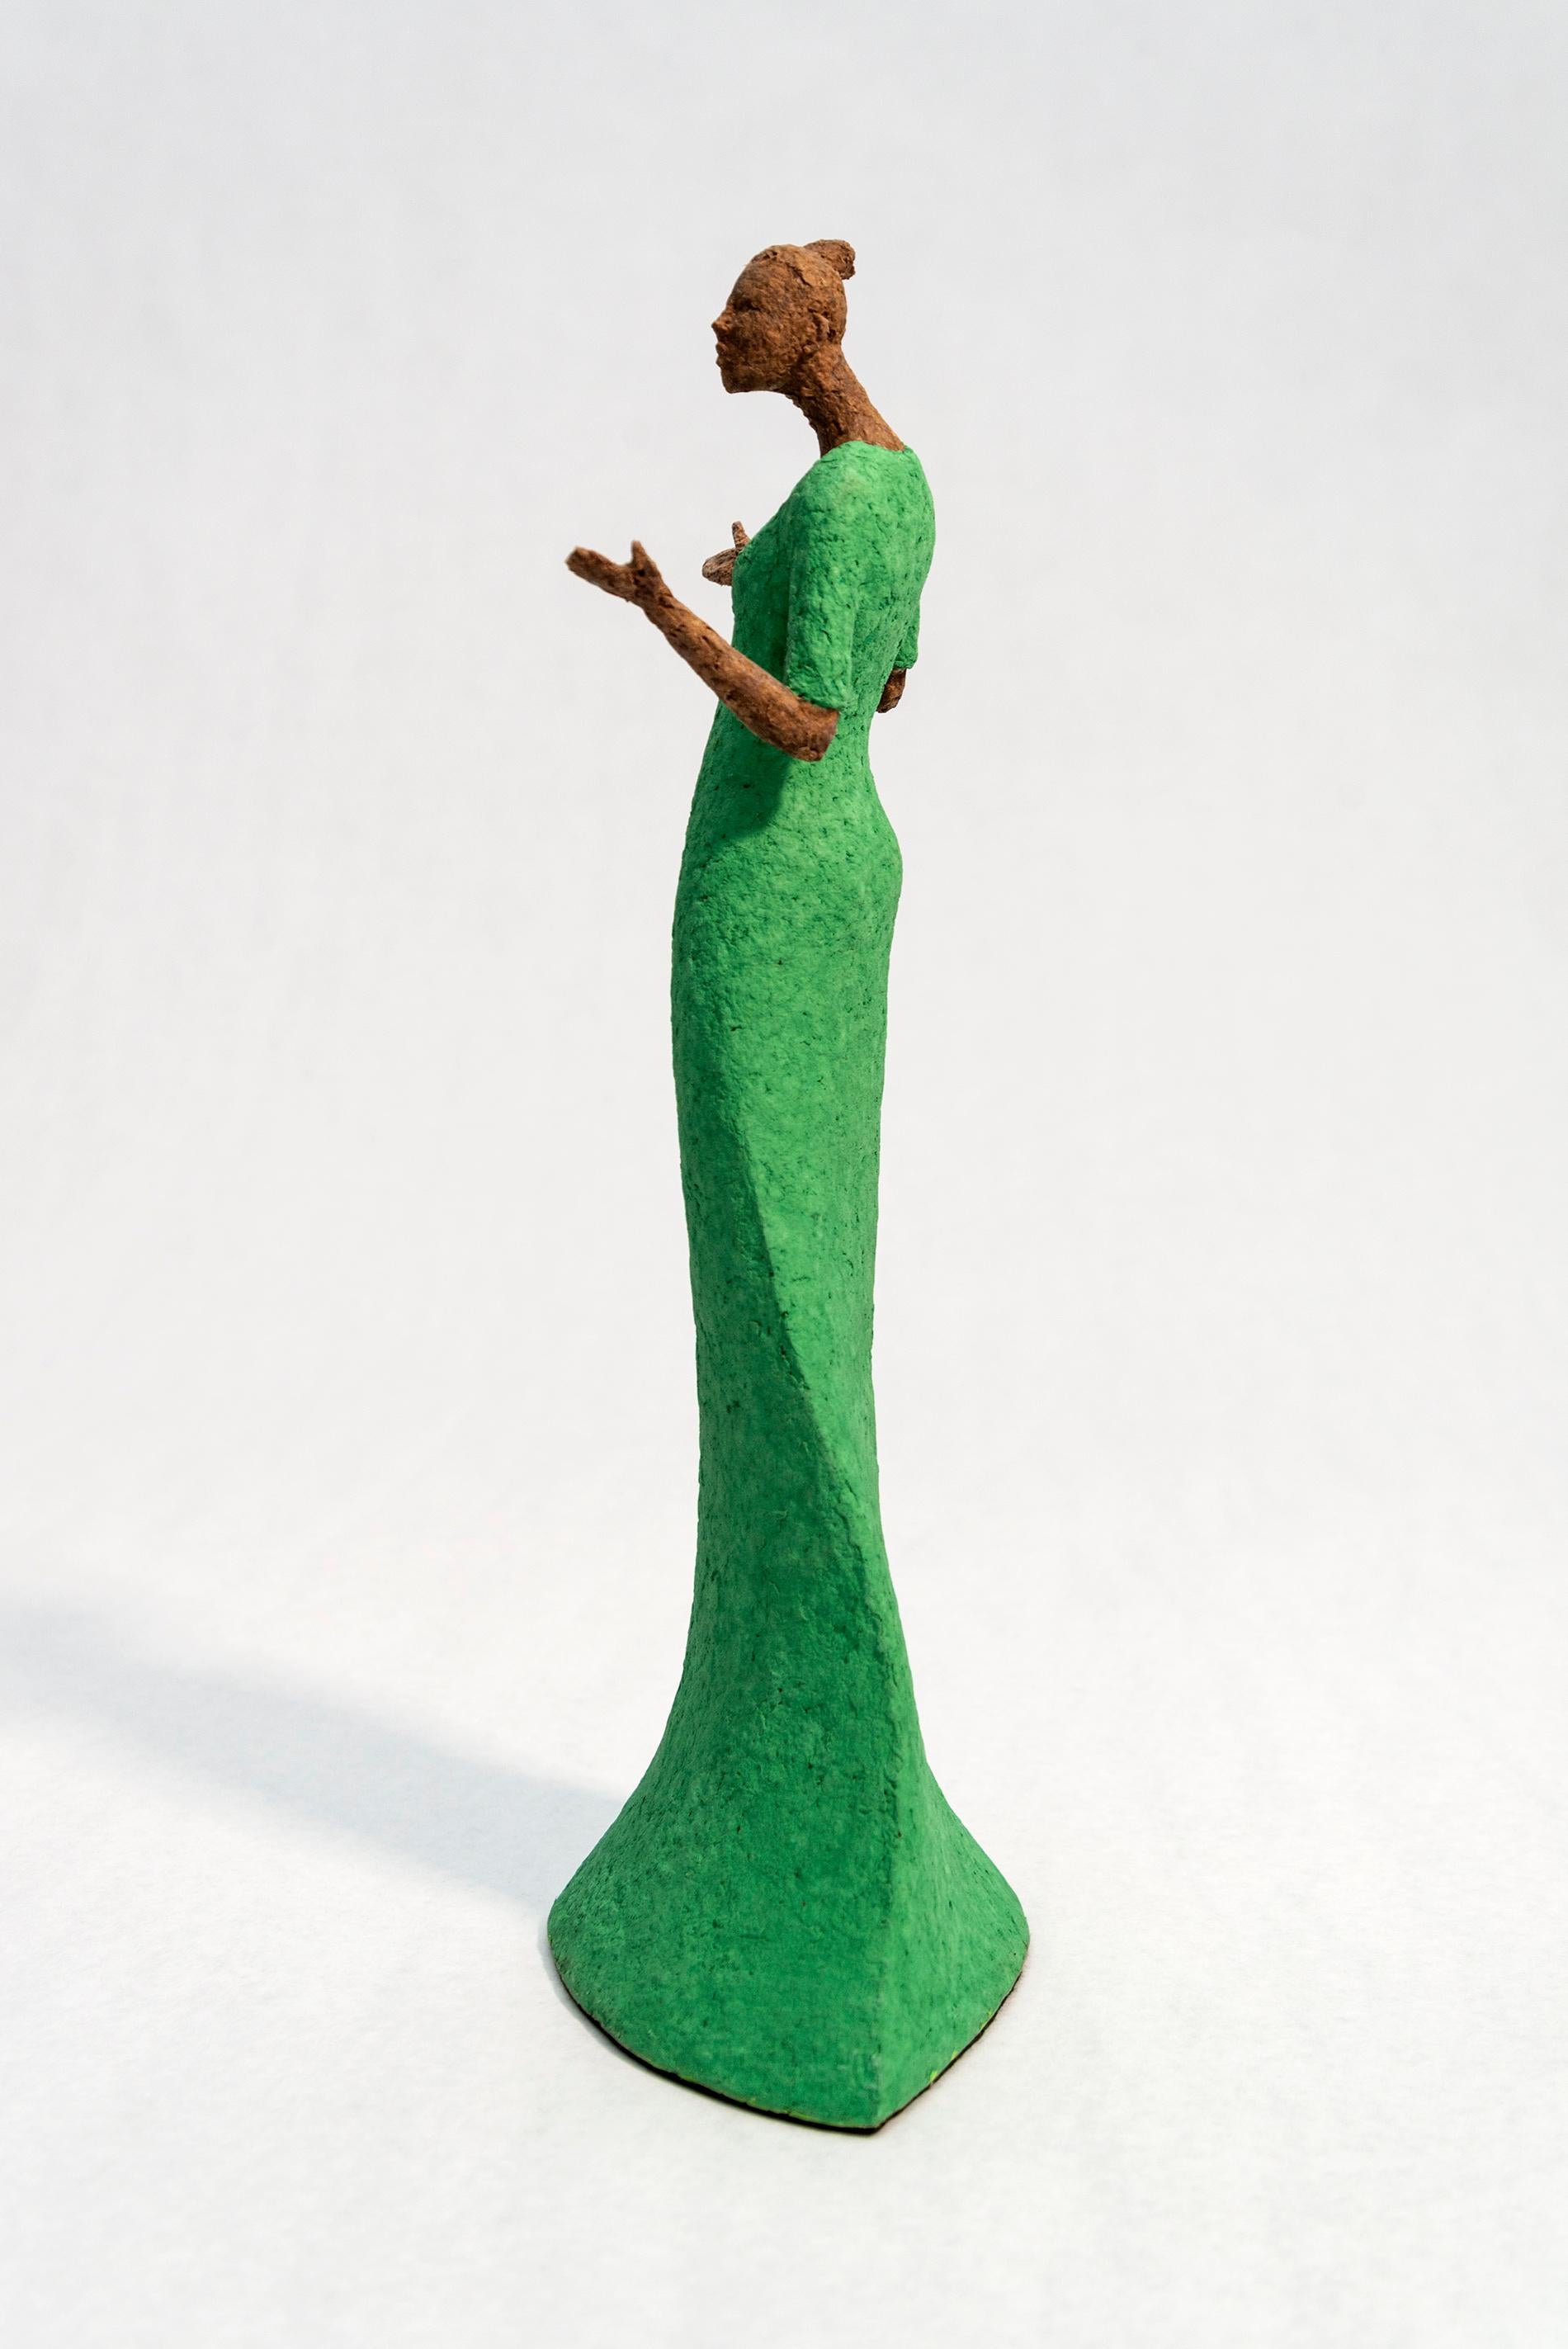 Bella - leuchtend, ausdrucksstark, strukturiert, weiblich, figurativ, Papiermaché-Skulptur (Zeitgenössisch), Sculpture, von Paul Duval